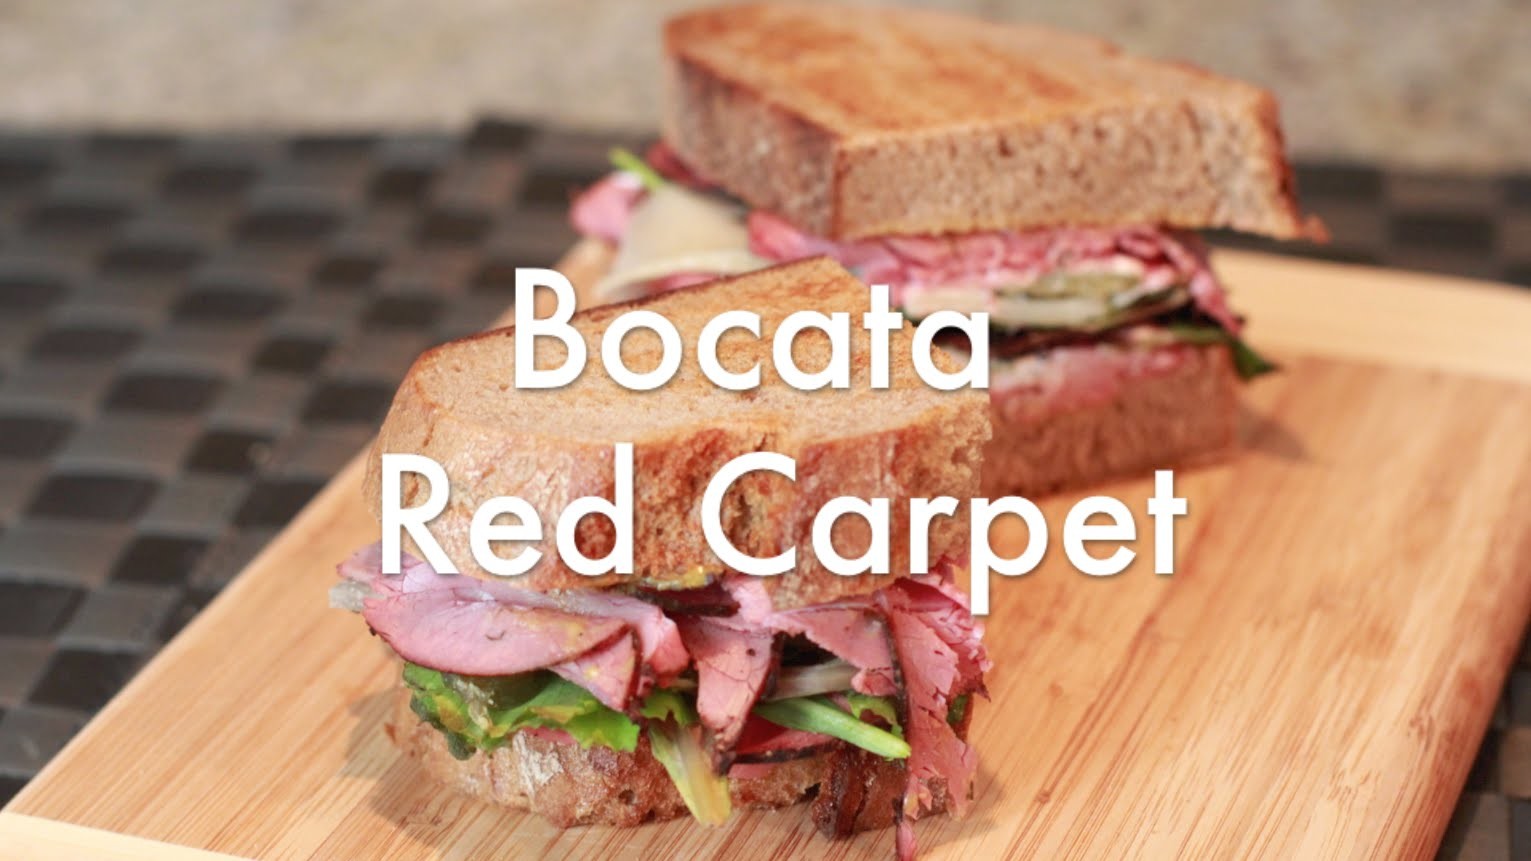 Bocata Red Carpet -  Recetas de Sandwiches